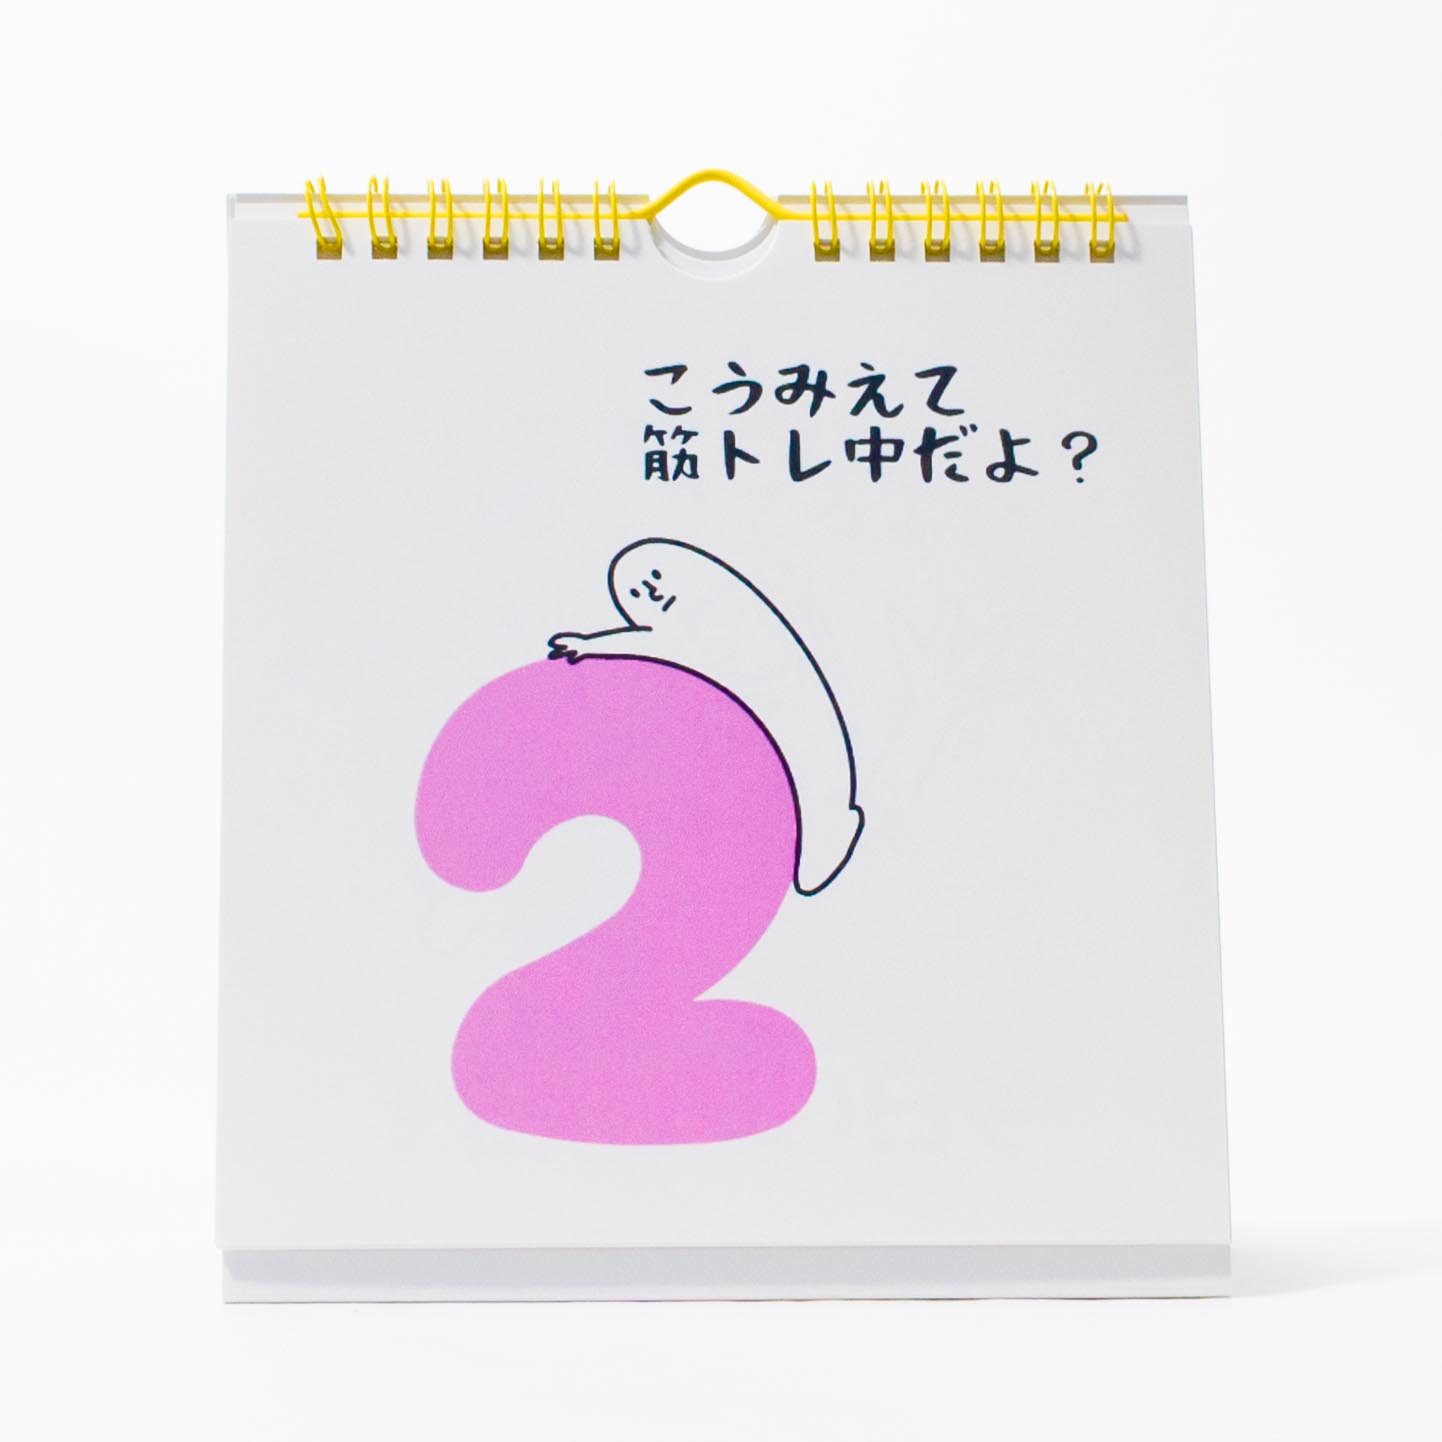 「山口　絵美菜 様」製作のオリジナルカレンダー ギャラリー写真1